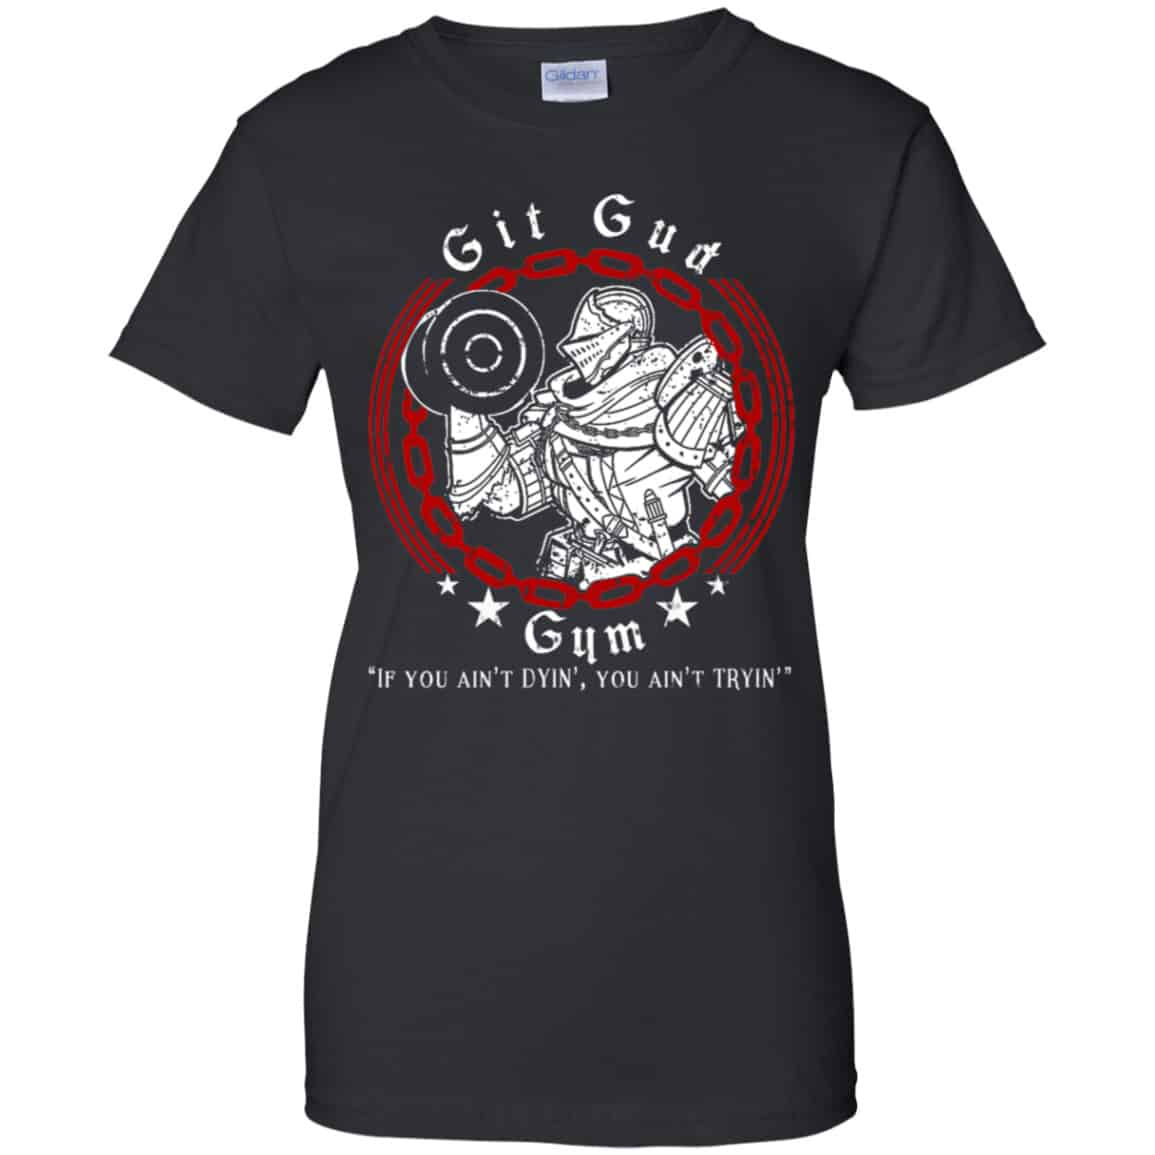 Git Gud Gym If You Ain't Dyin' You Ain't Tryin' Shirt